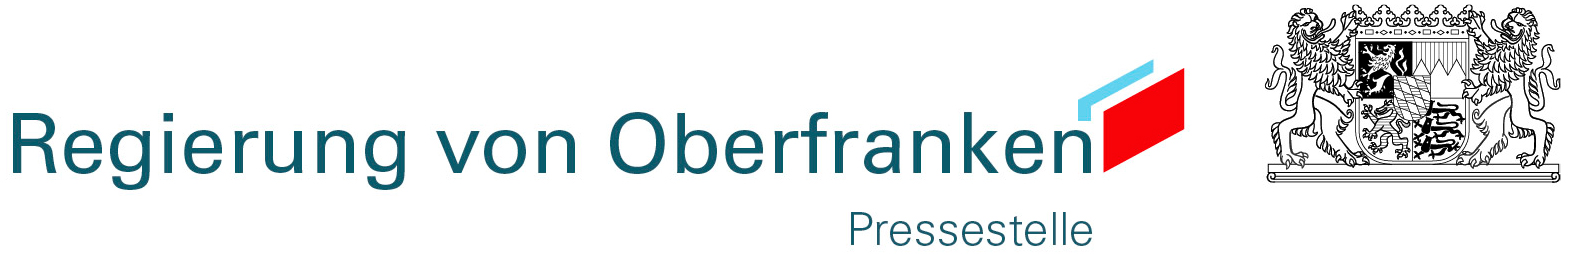 regierung-von-oberfranken-logo